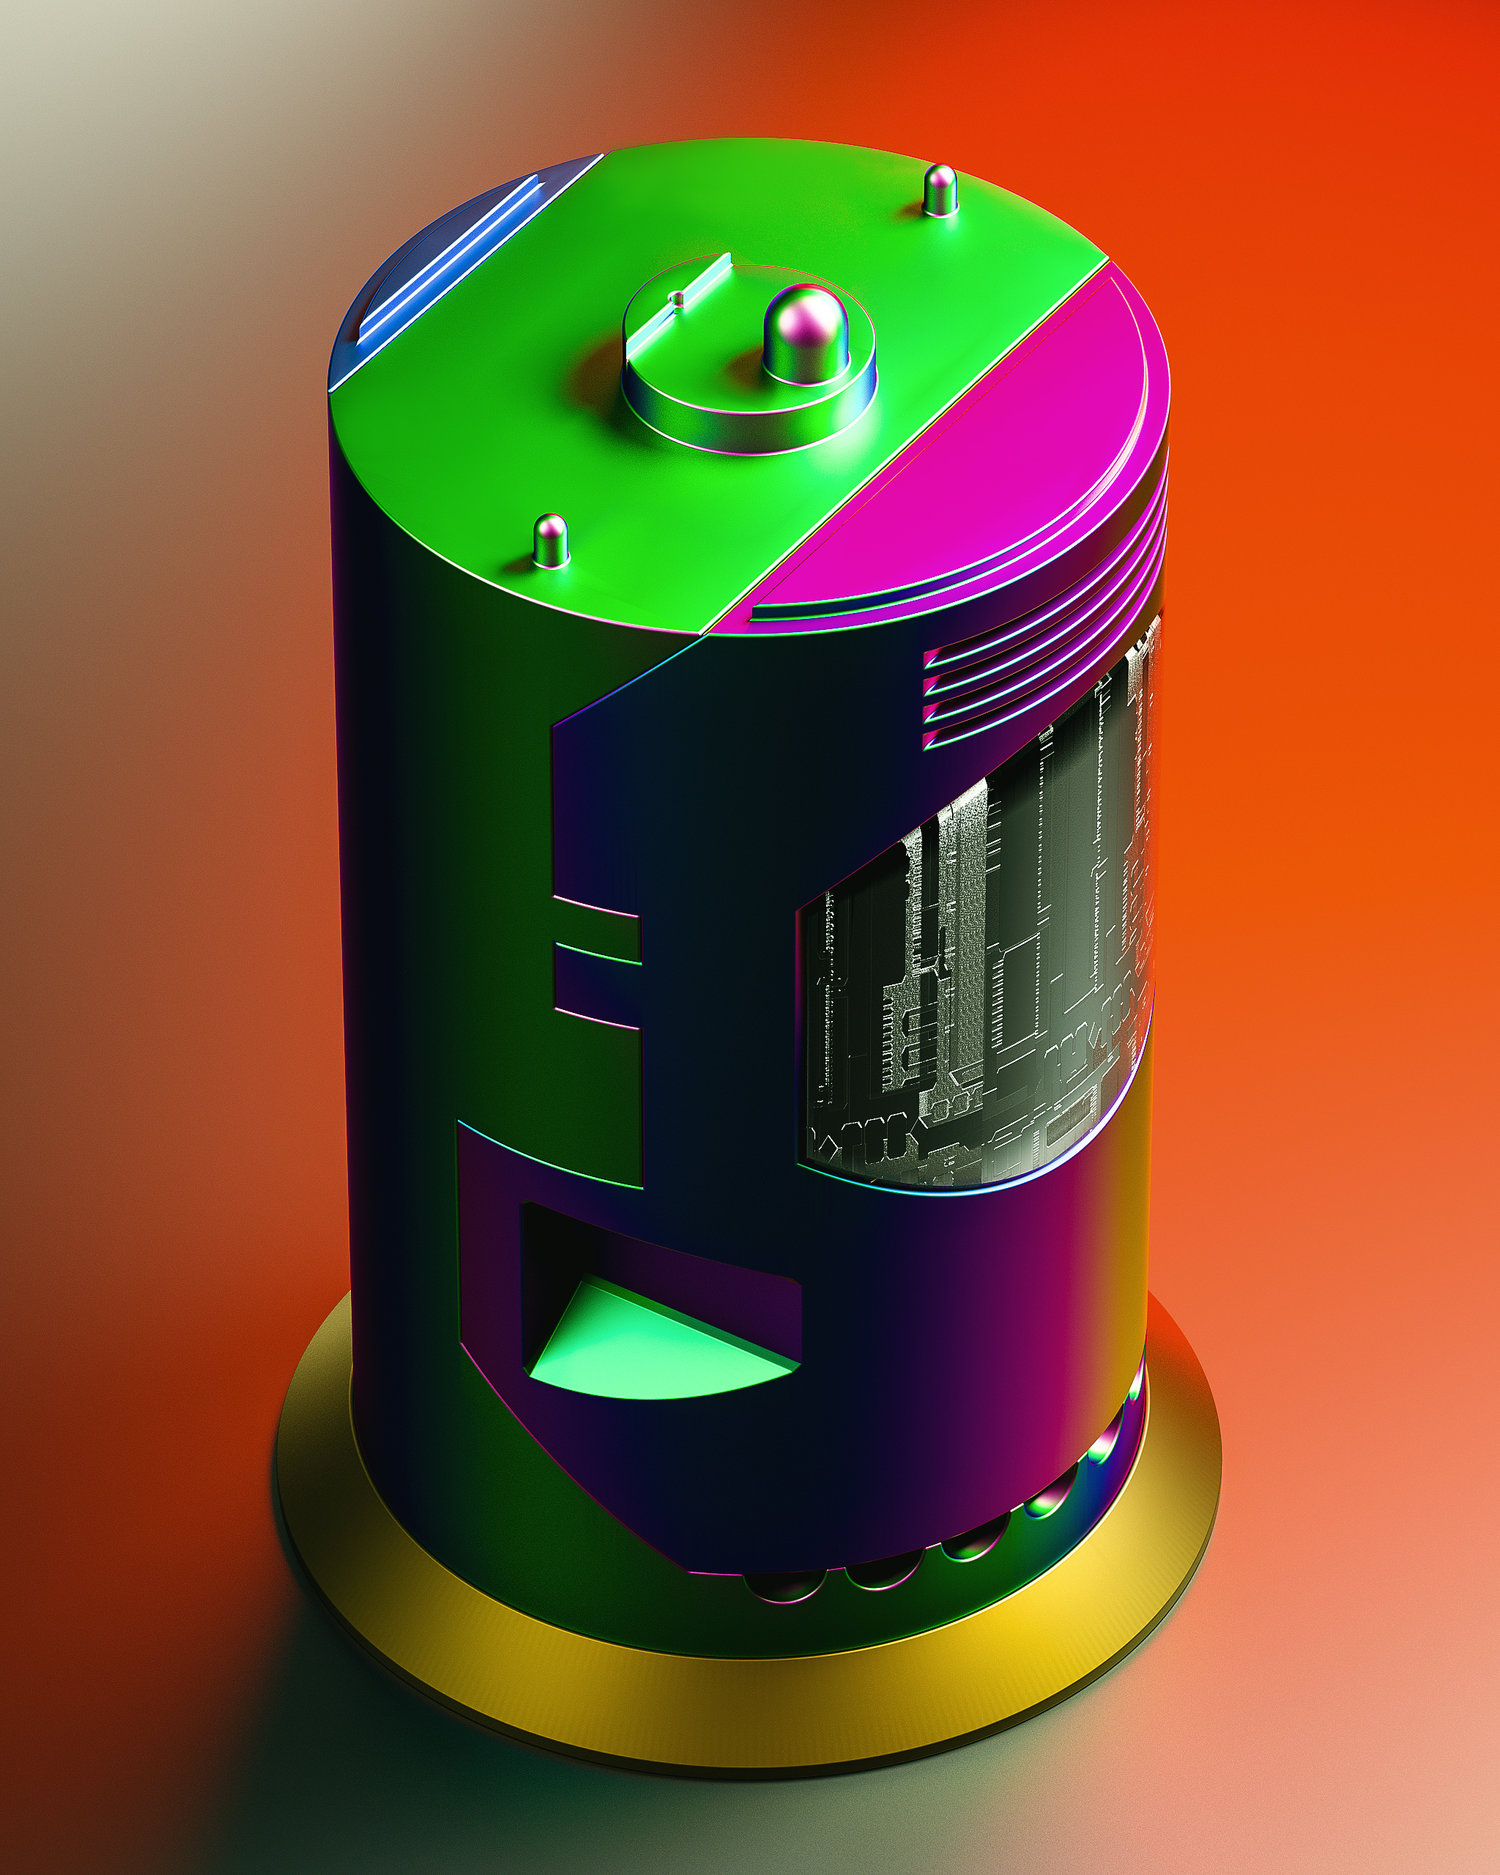 蓄能电池彩色金属芯片内核[07-07-17]-P02.jpg